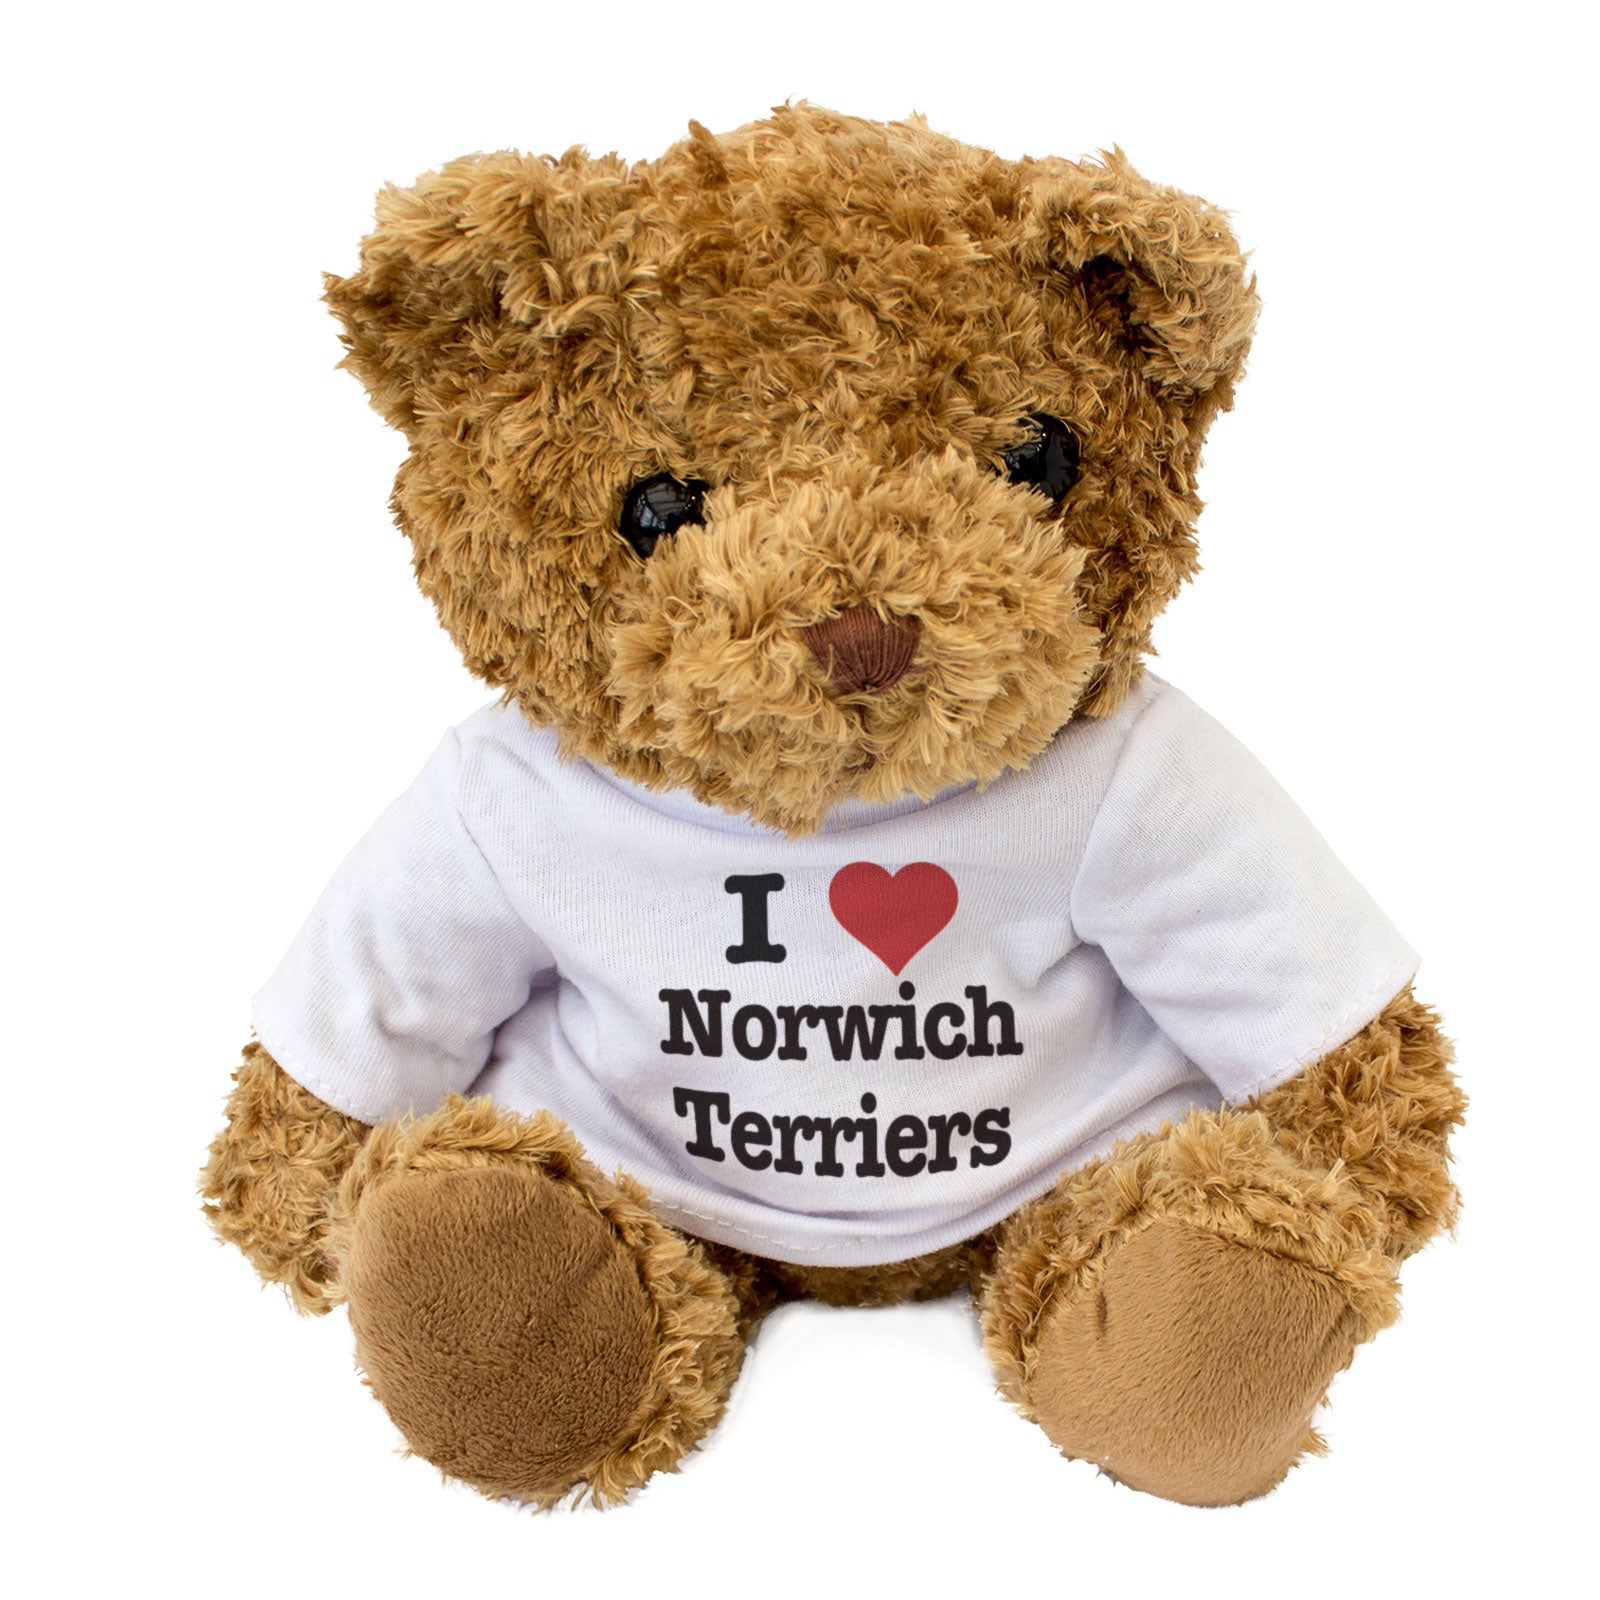 I Love Norwich Terriers - Teddy Bear